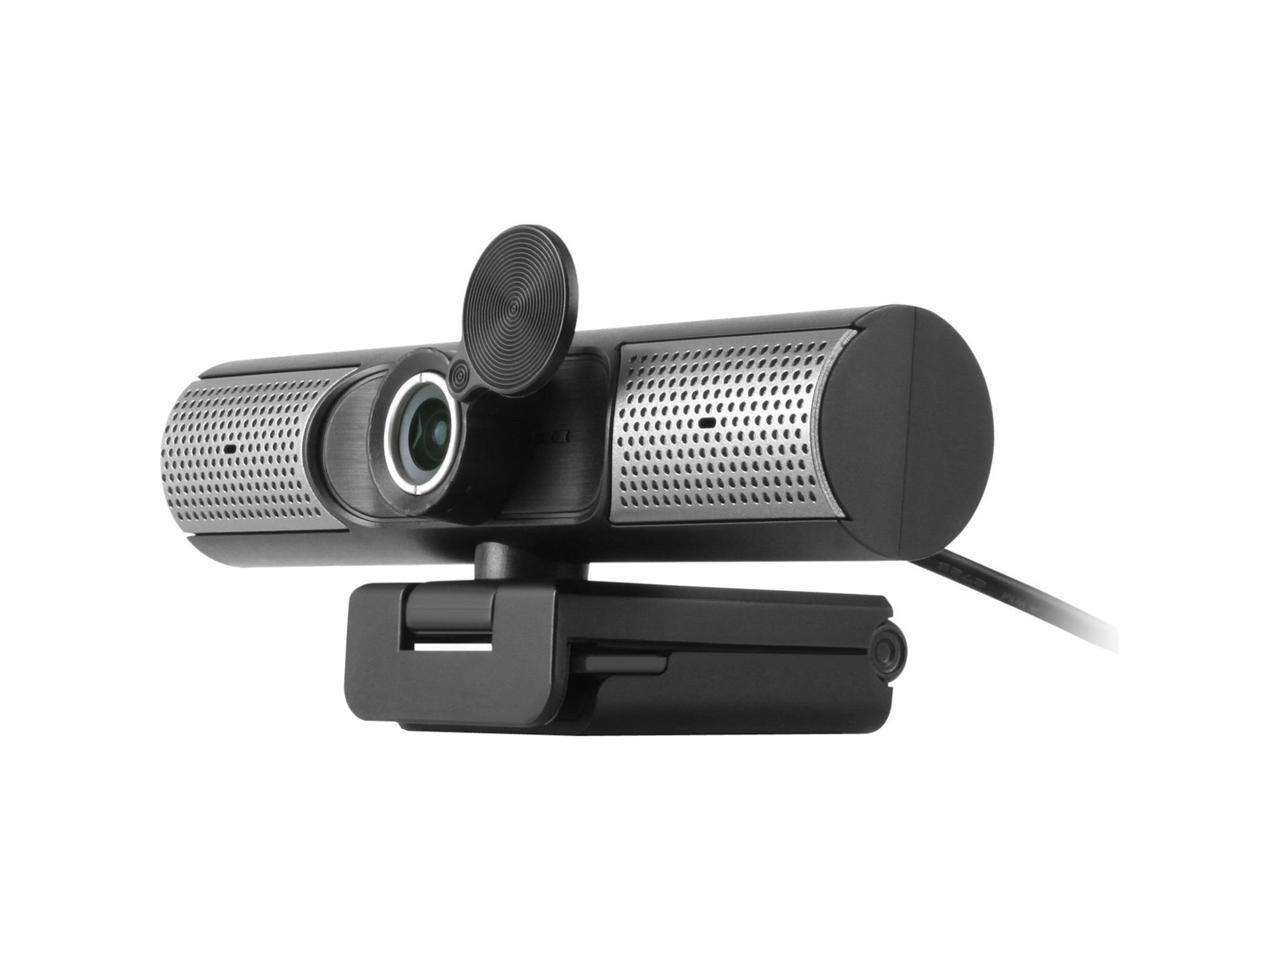 Aleratec Aluratek Awcs06f Webcam 30 FPS Usb 2.0 Type A